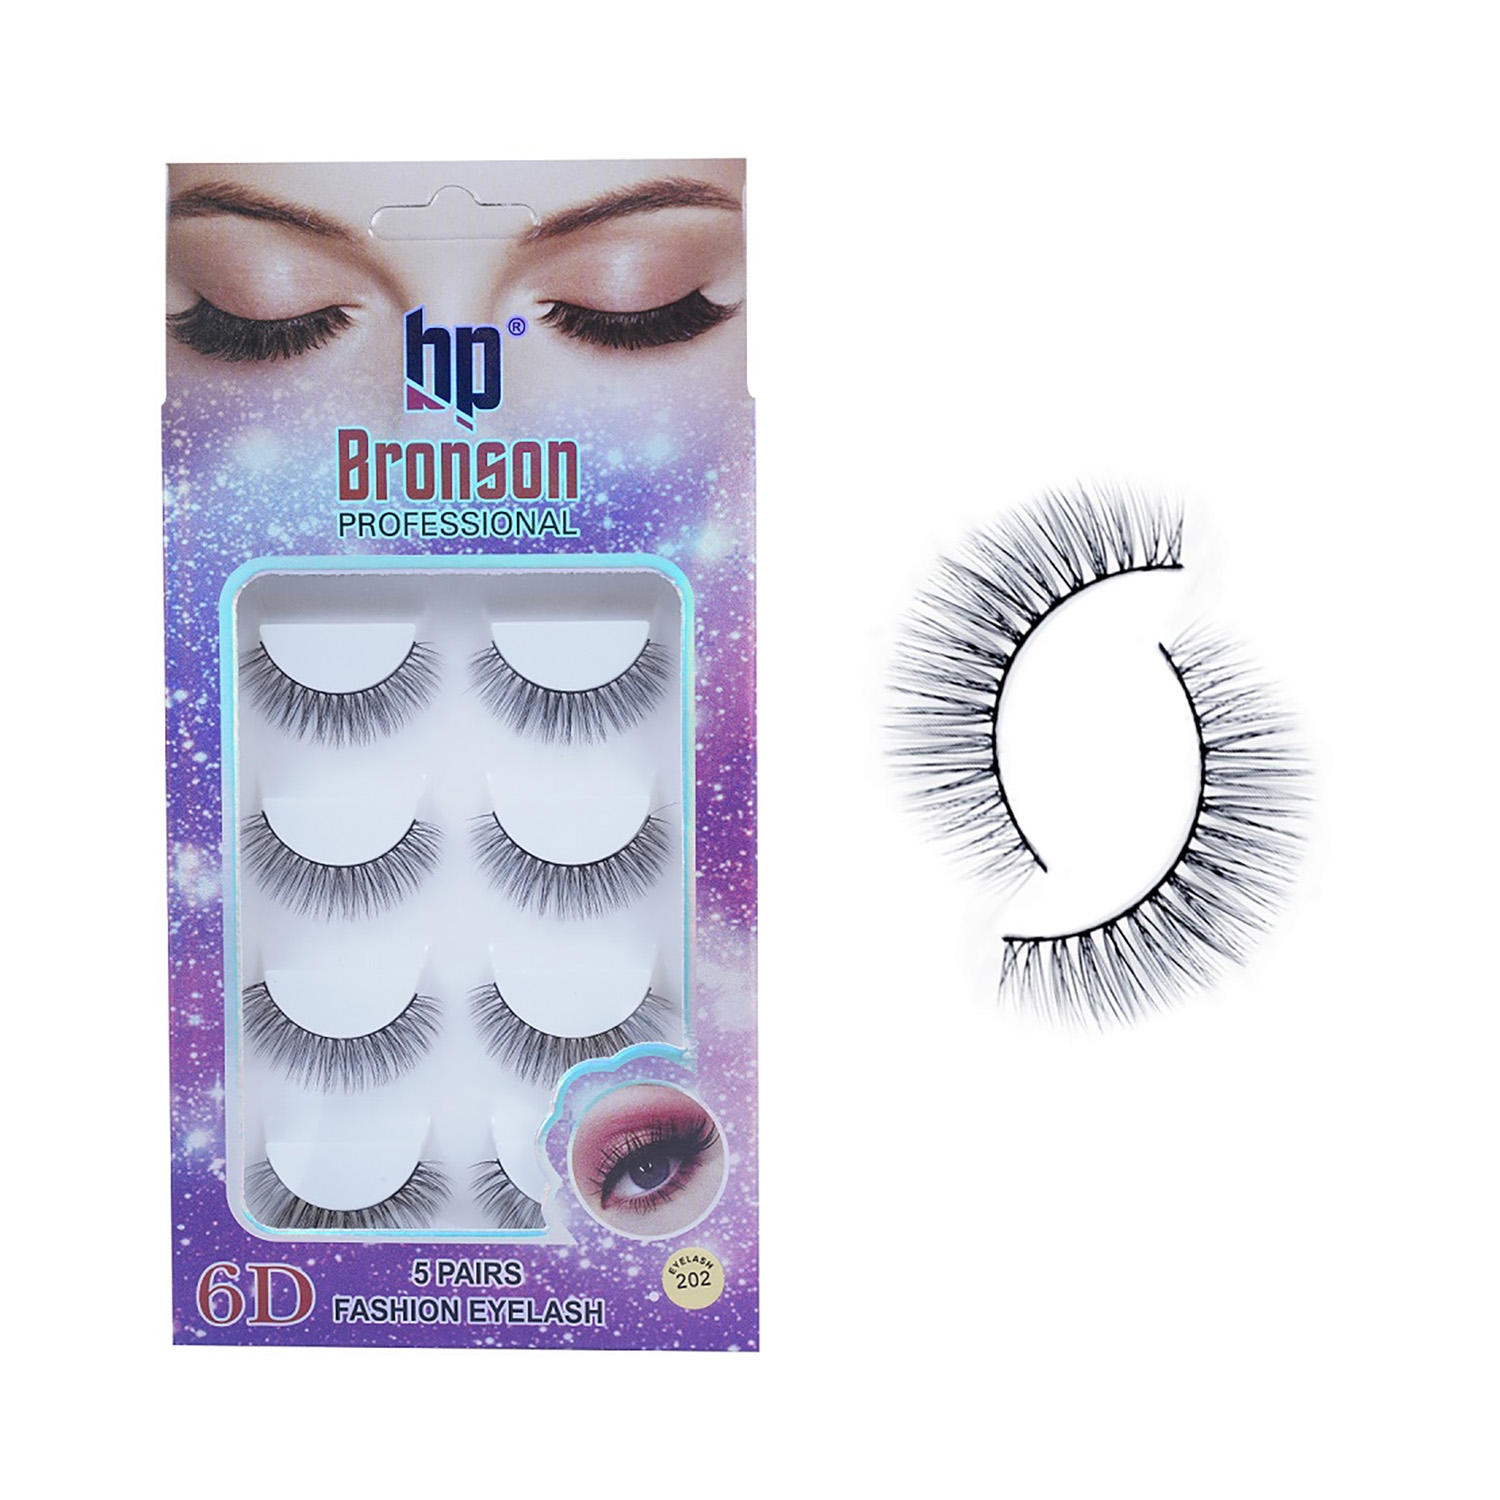 Bronson Professional | Bronson Professional Pair 6D Long & Natural False Eyelashes - 202 - Black (5 Pairs)